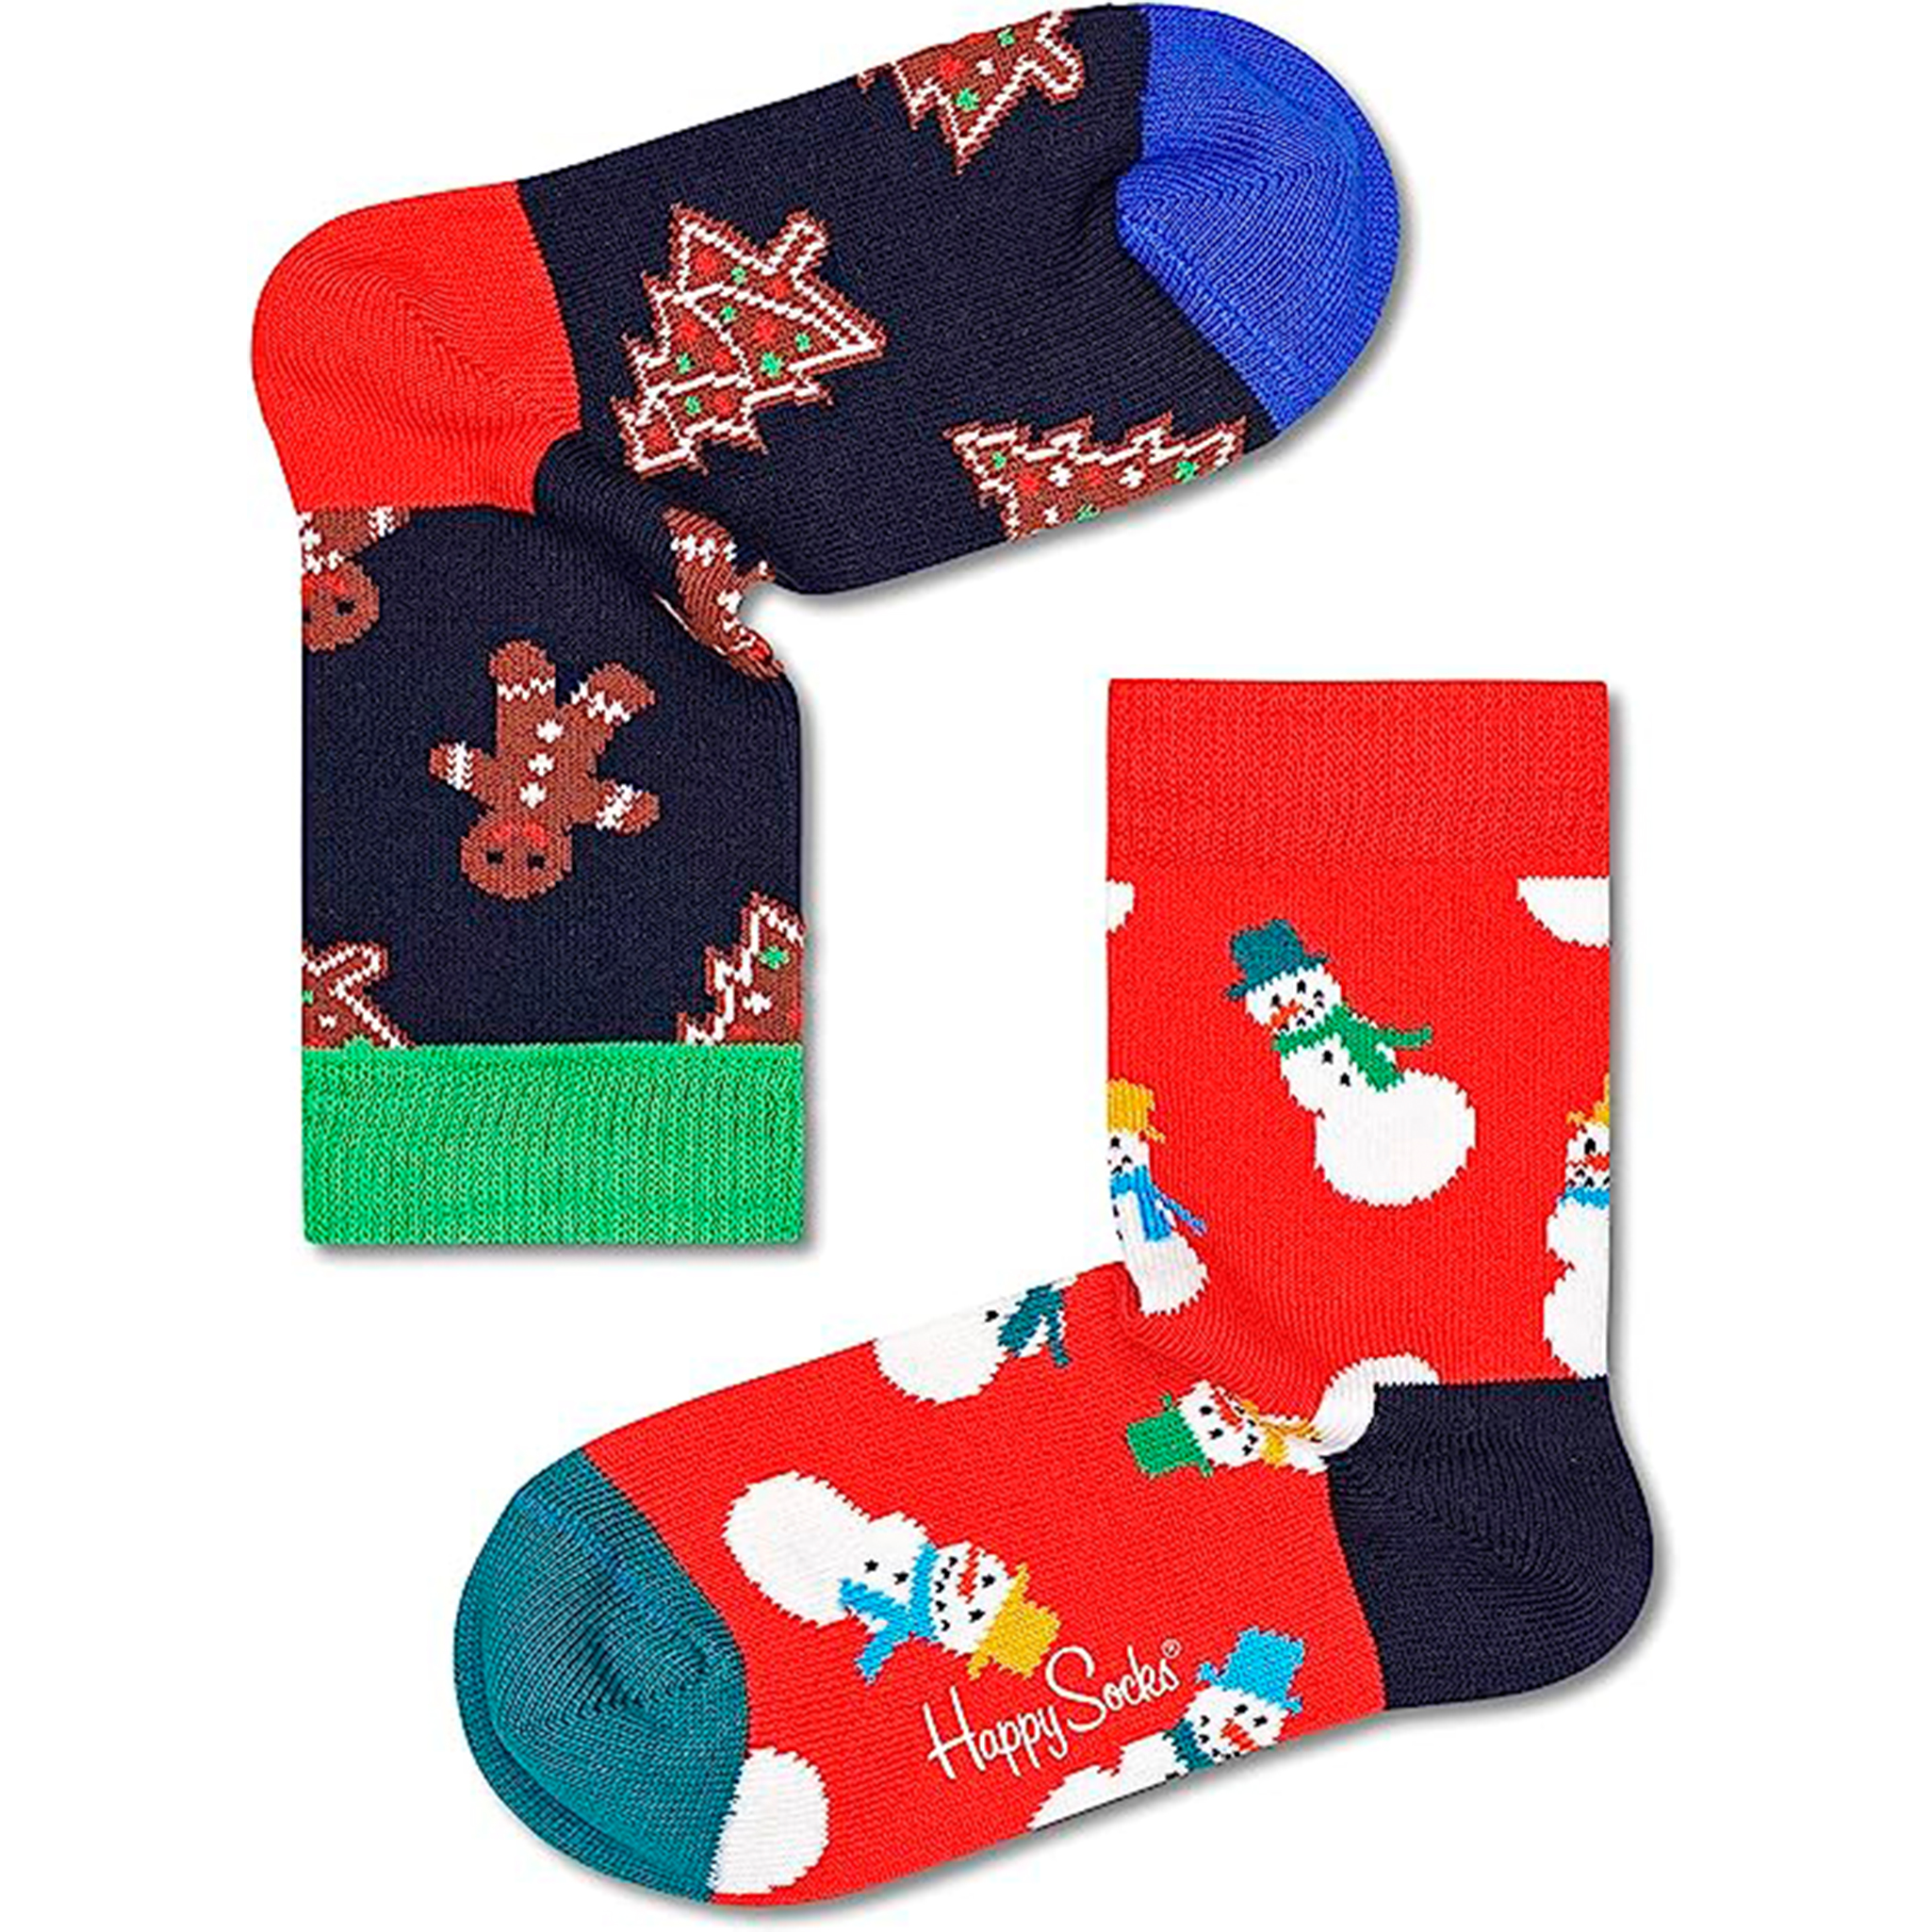 Par De Calcetines Kids Holidays Gift Set - multicolor - 